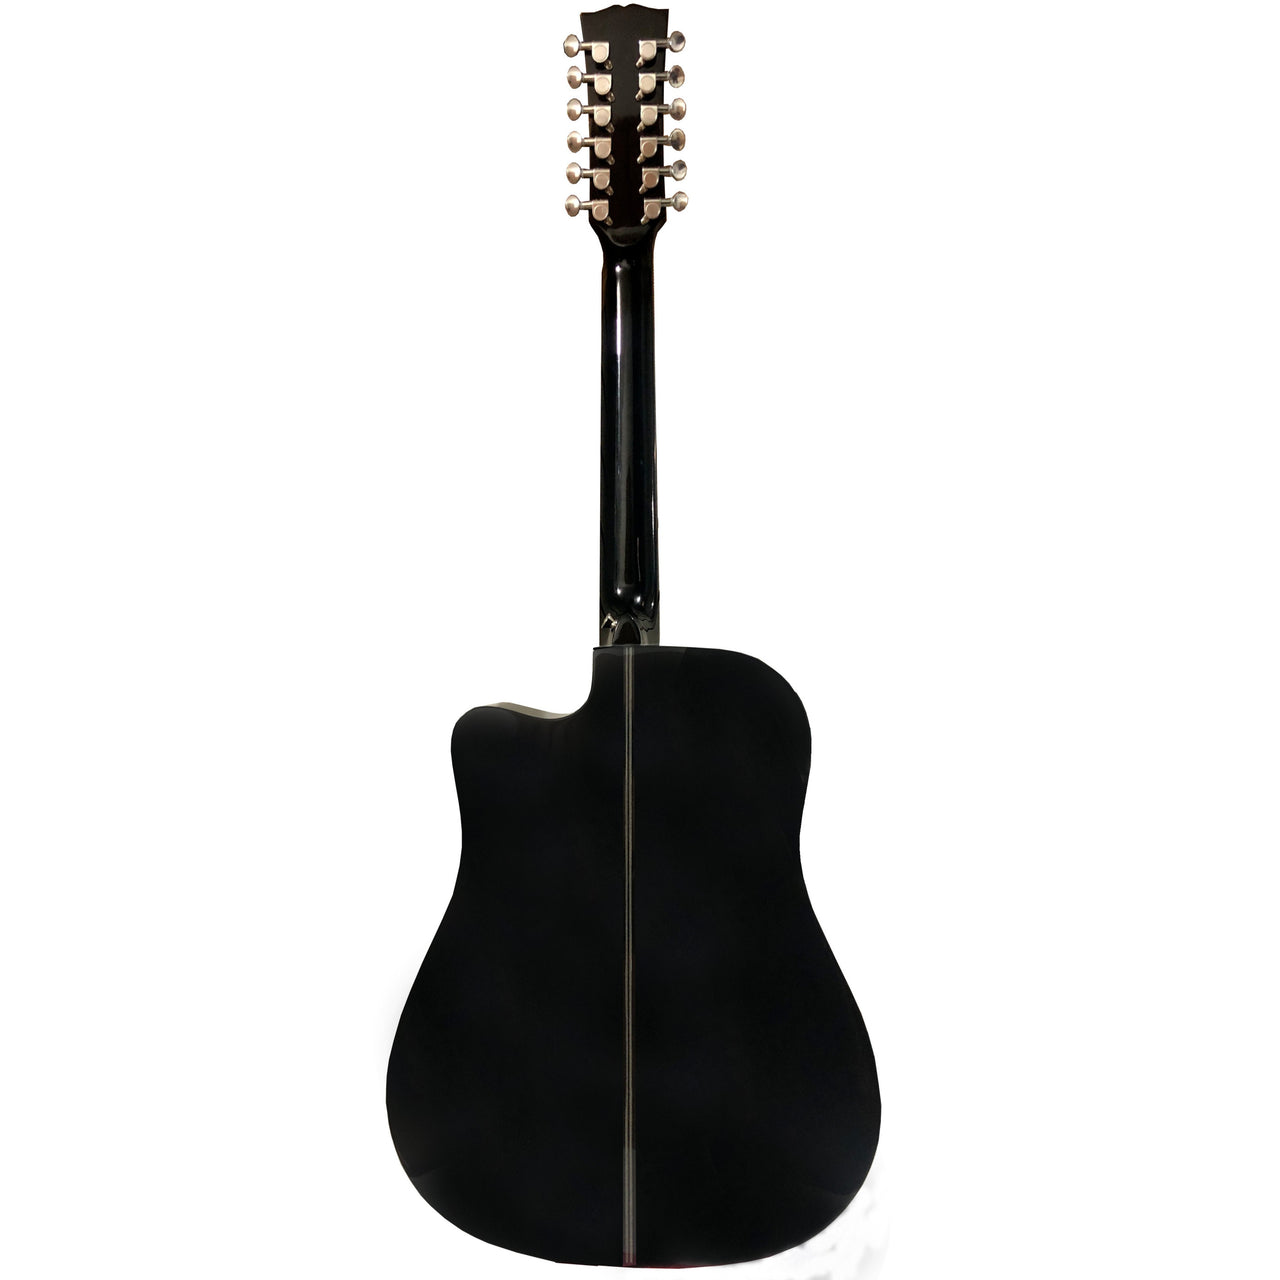 Guitarra Electroacustica Mc Cartney X-12-bk Negro 12 Cuerdas